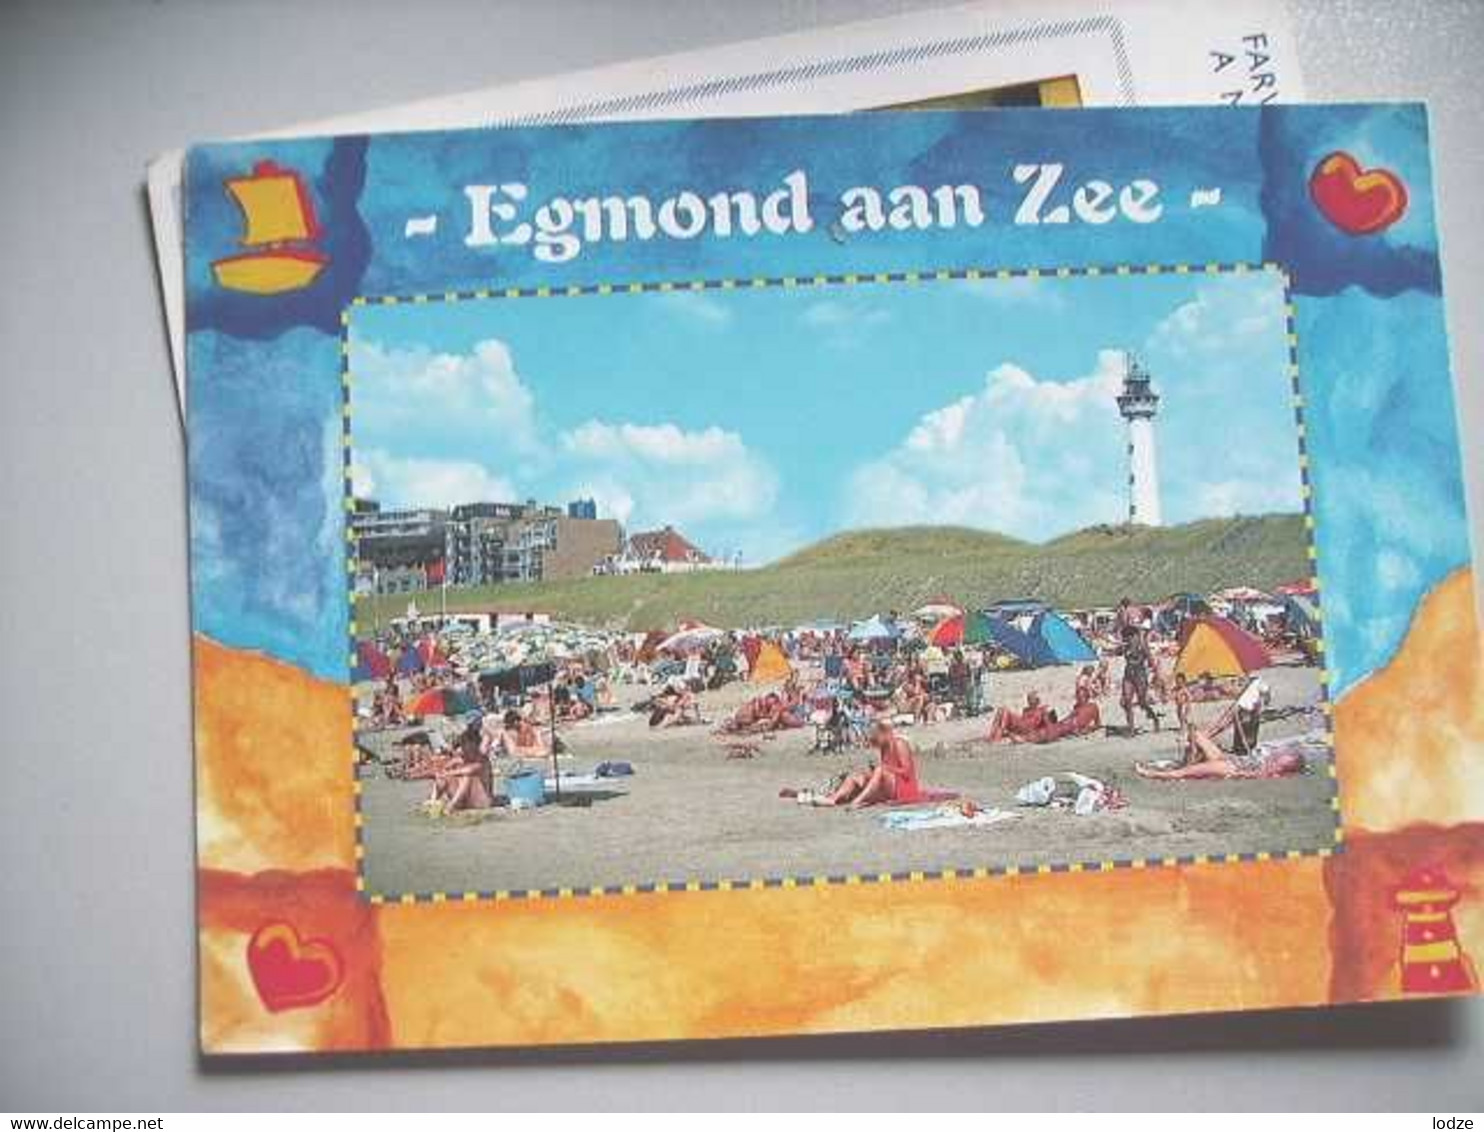 Nederland Holland Pays Bas Egmond Aan Zee Met Fraaie Rand - Egmond Aan Zee